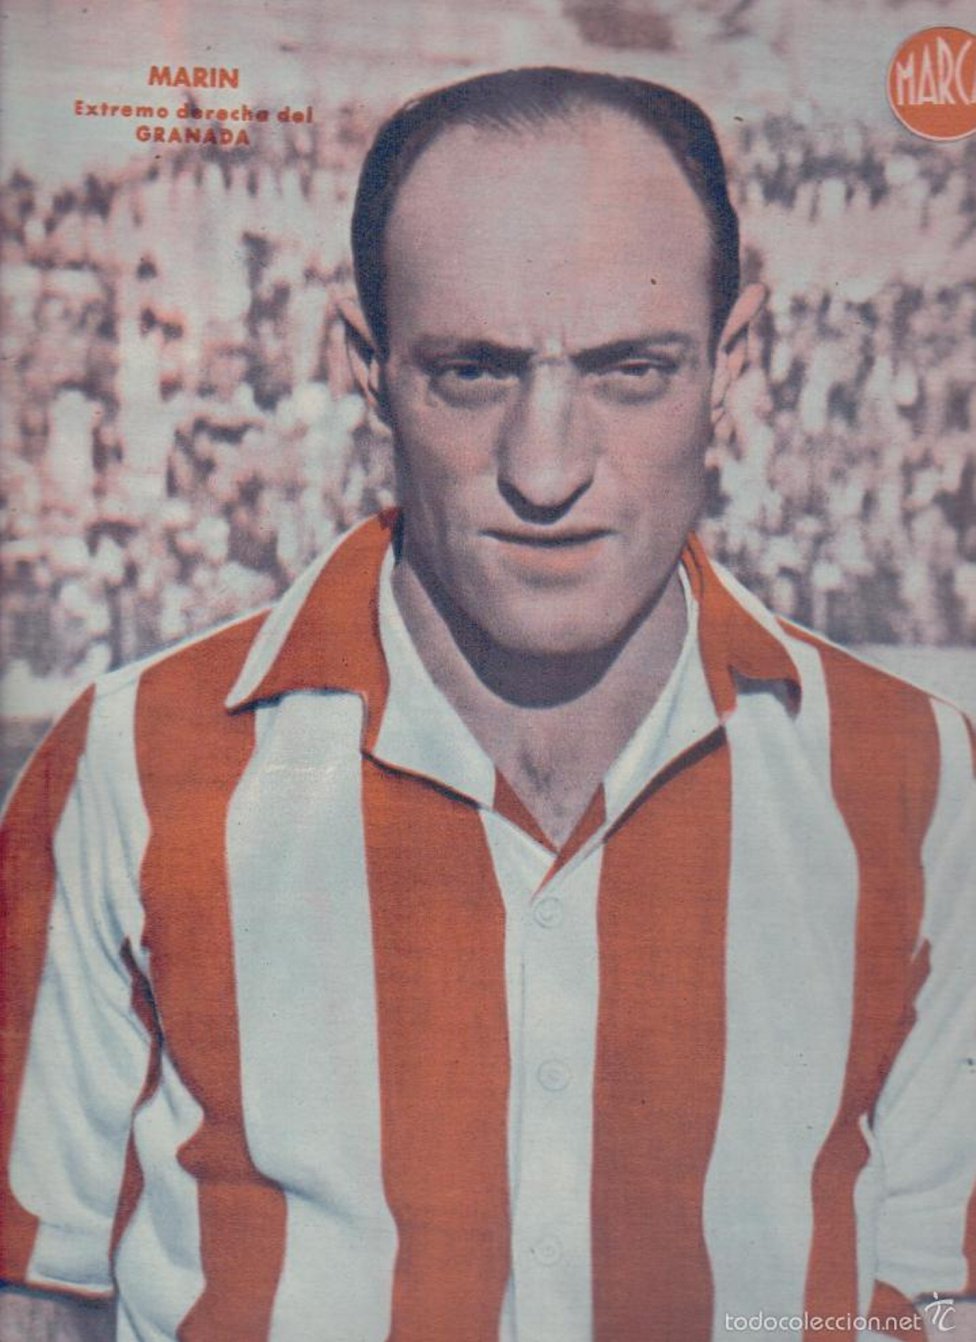 Marín  Jugó con el Atlético de Madrid entre 1928 y 1936. Vistió la camiseta del Granada desde 1941 hasta 1945. 